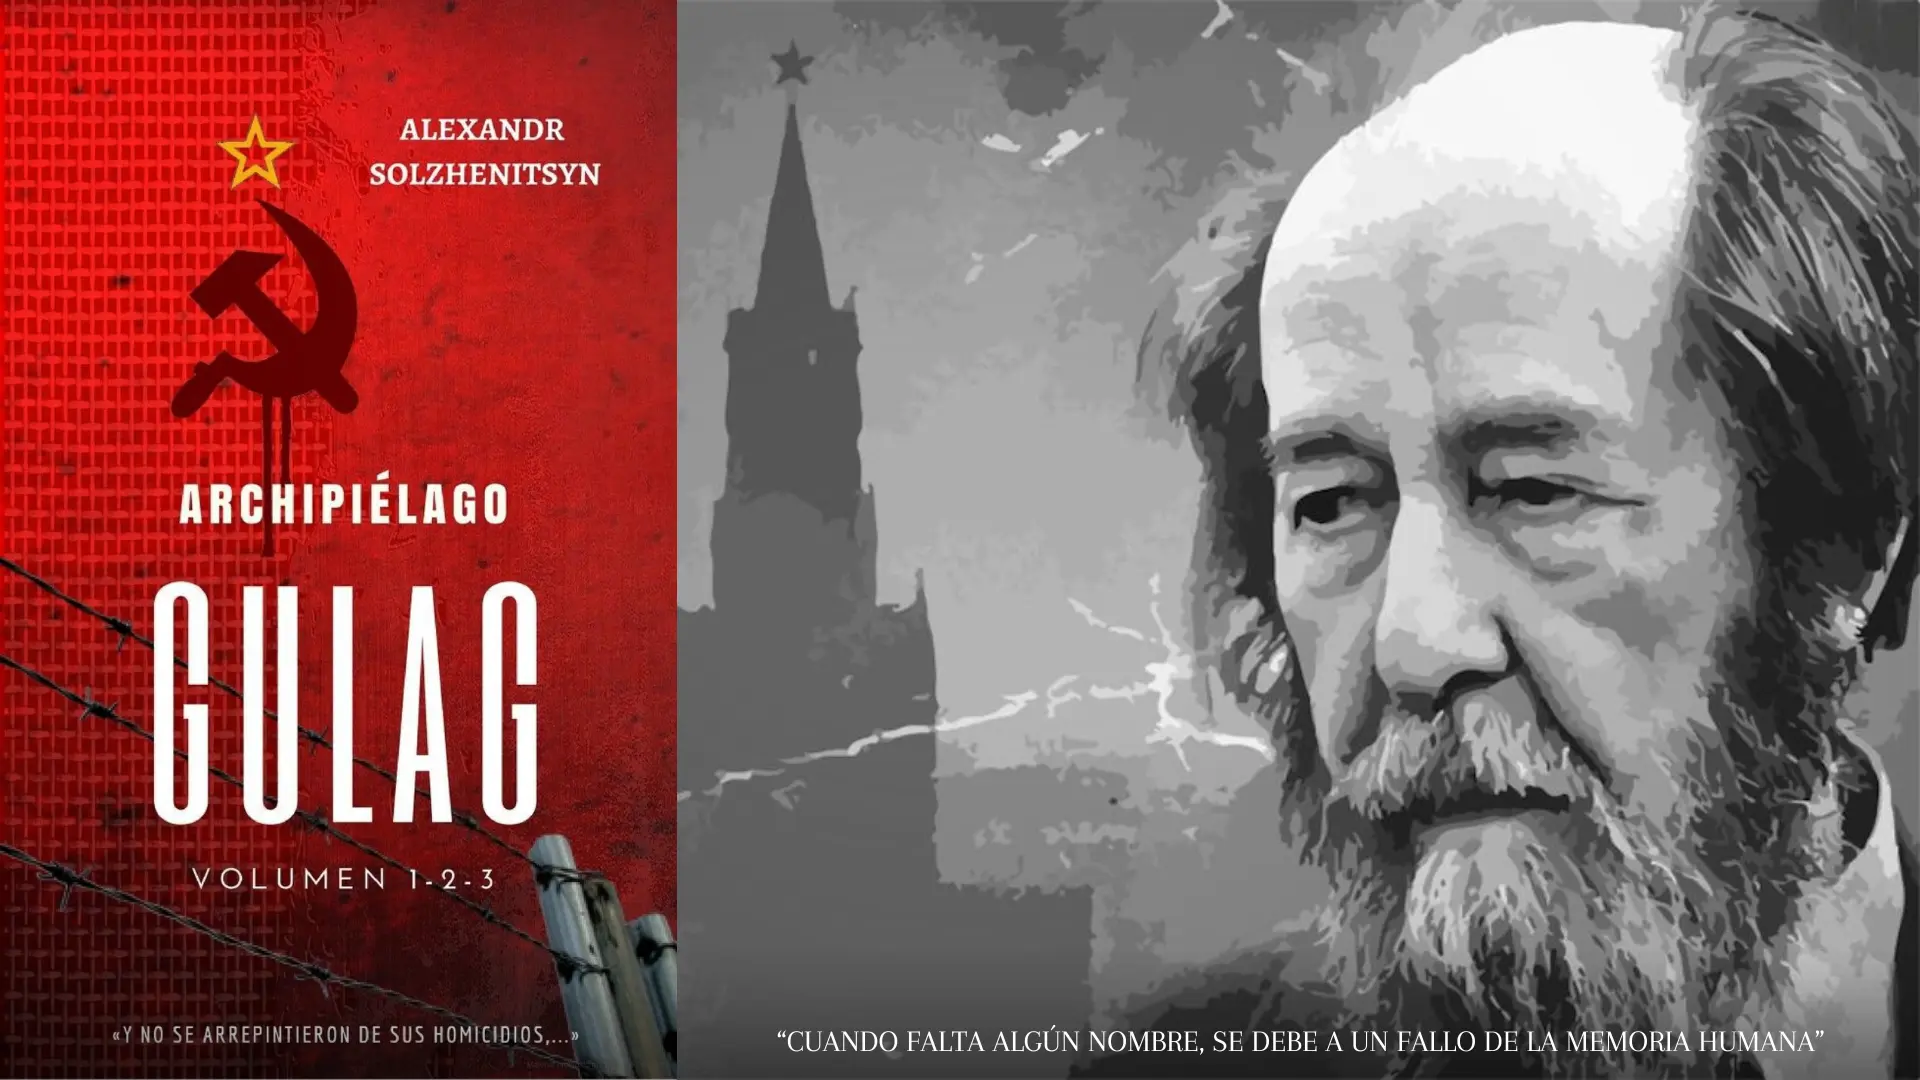 El libro "Archipiélago GULAG: Cuando falta algún nombre, se debe a un fallo de la memoria humana" de Alexandr Solzhenitsyn